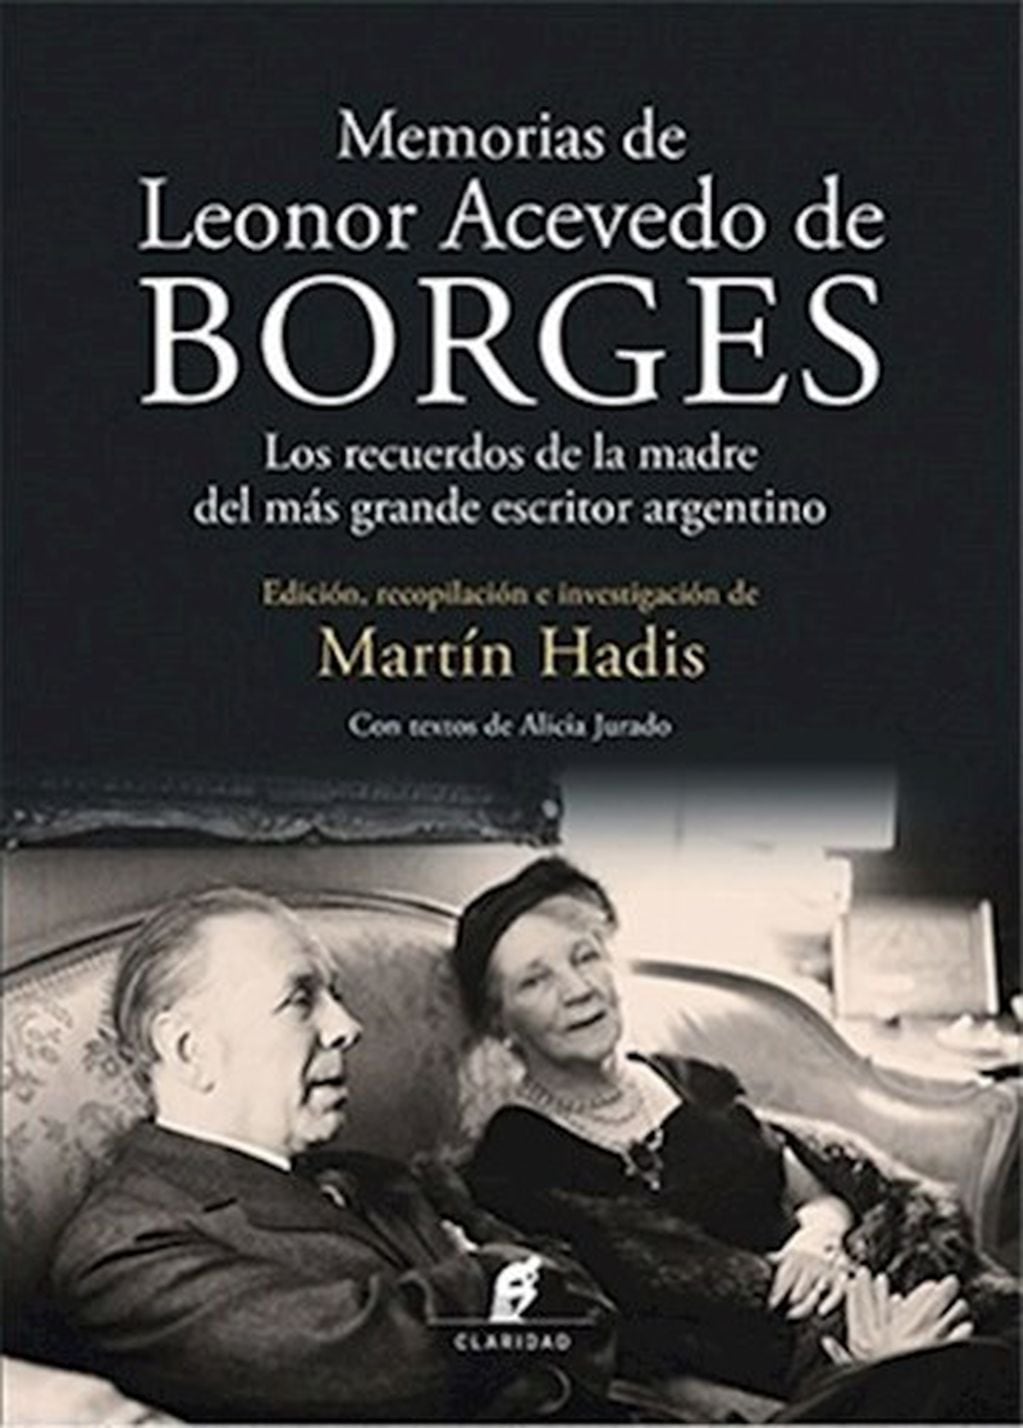 "Memorias de Leonor Acevedo de Borges", editado por Claridad.